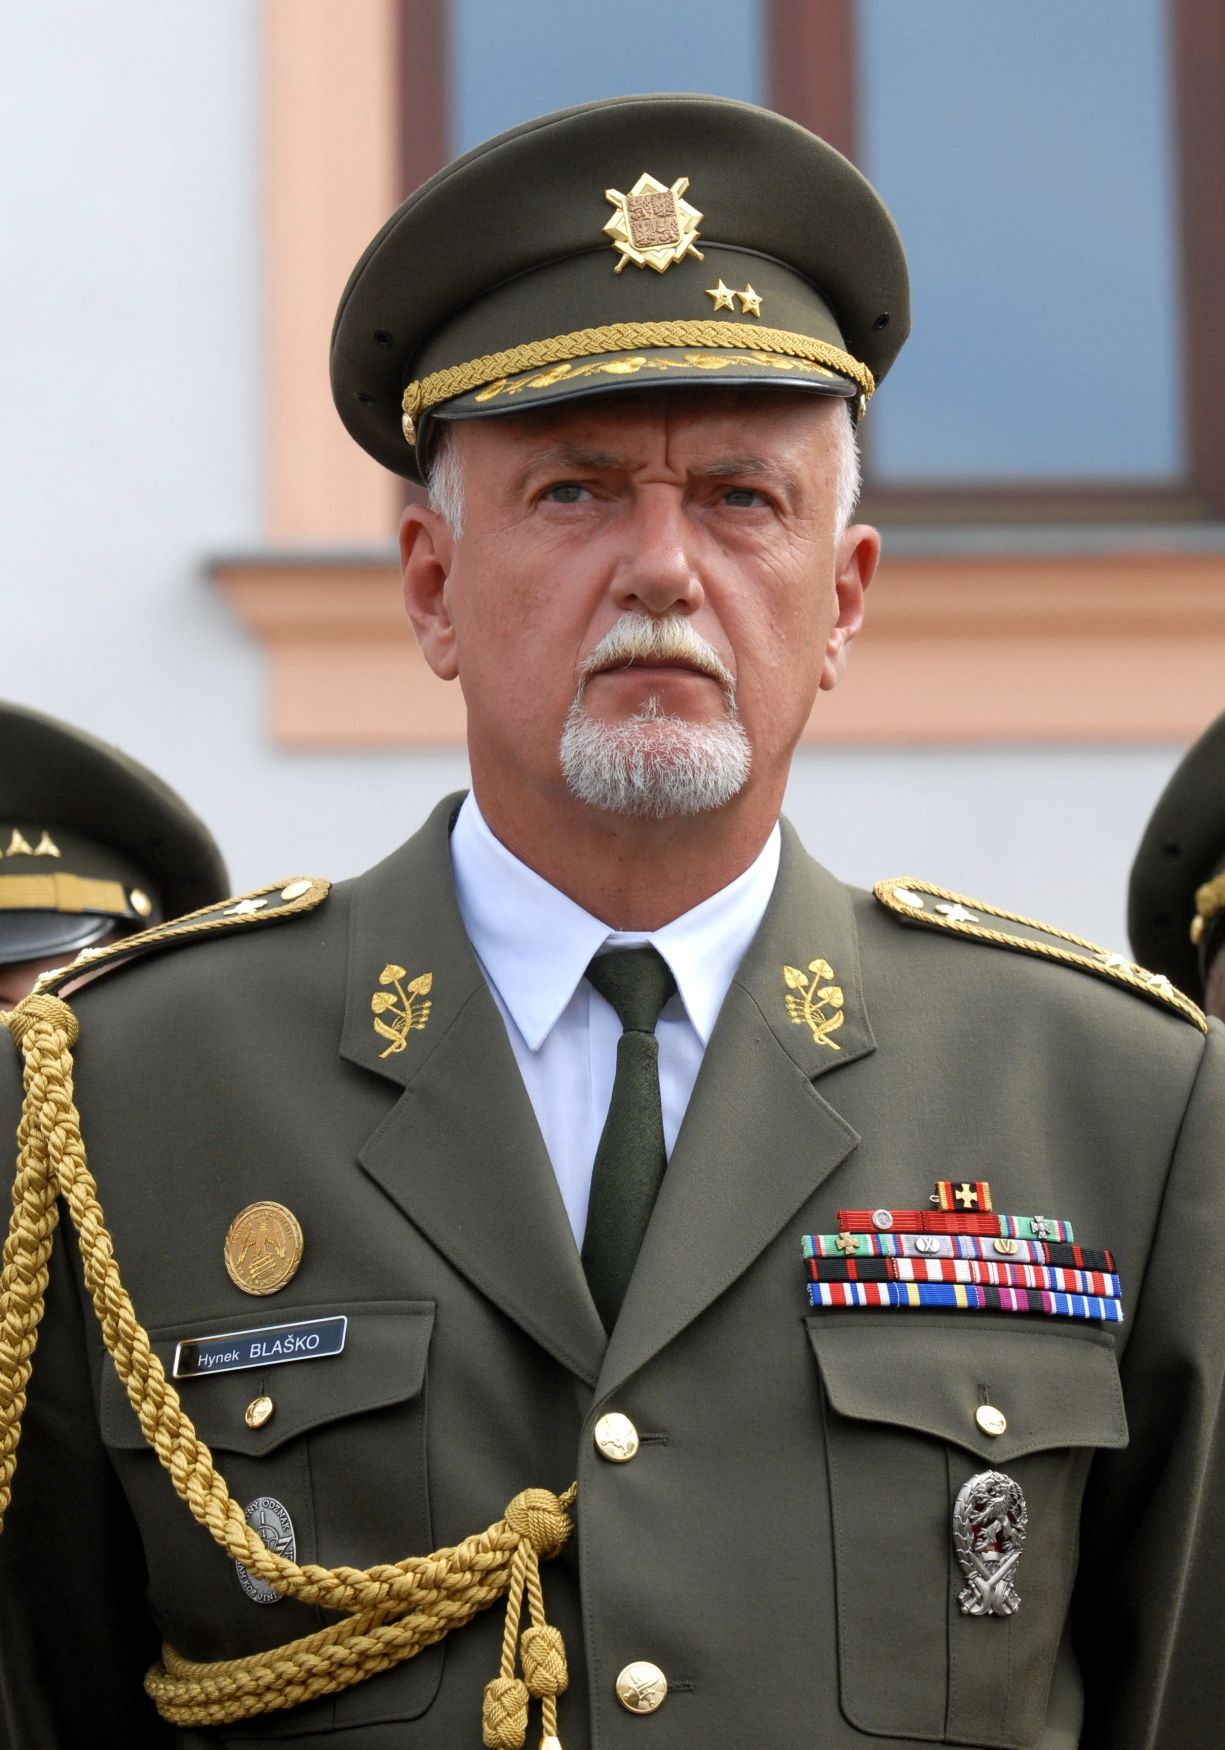 Generál Hynek Blaško na snímku z roku 2009.